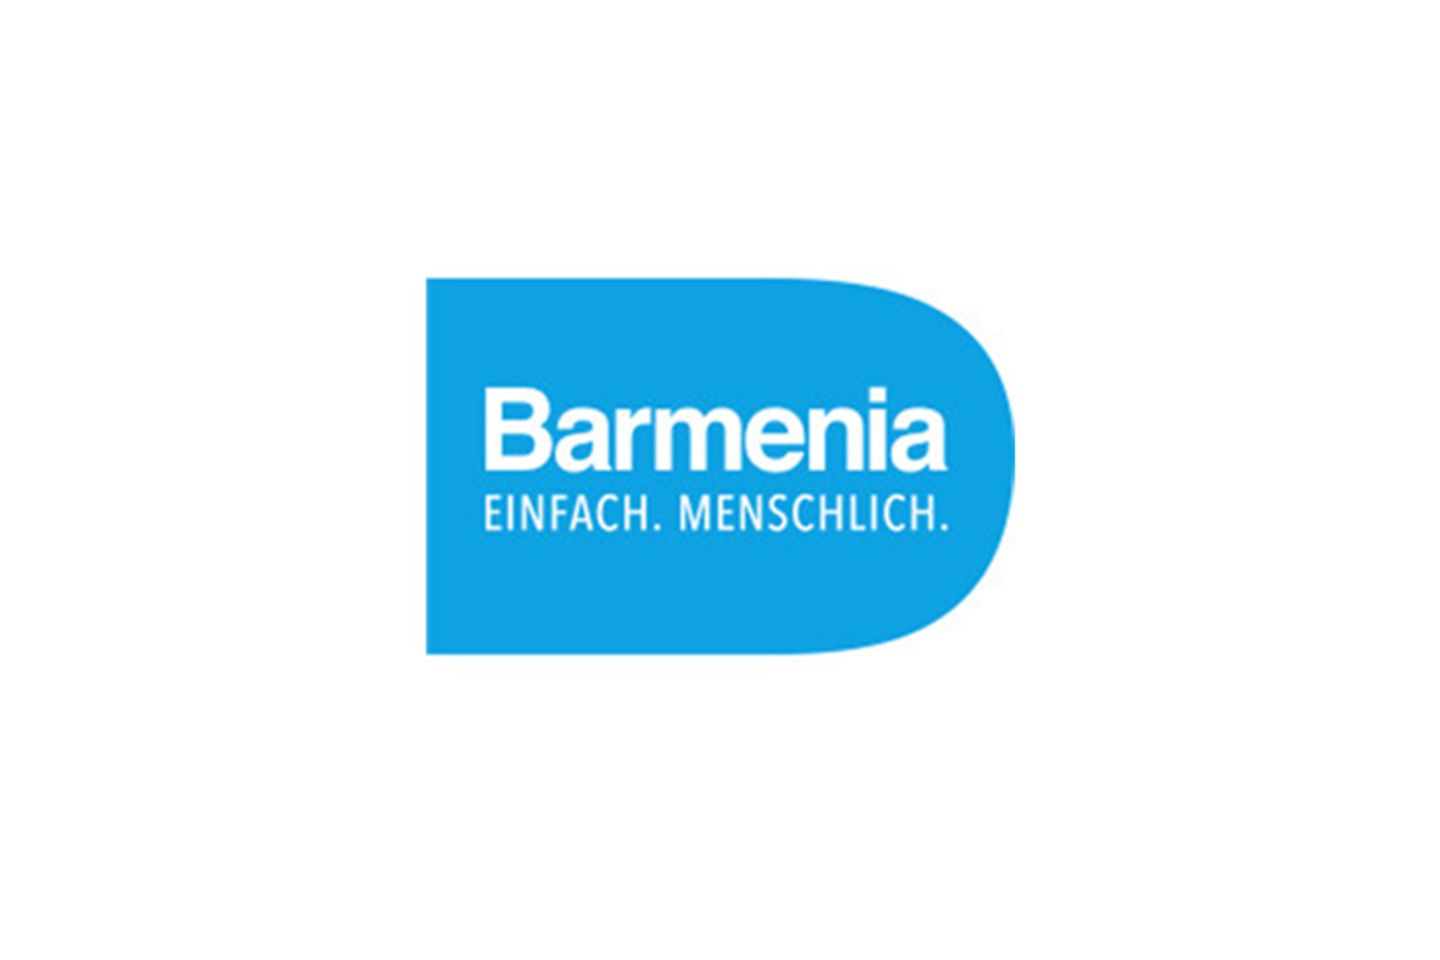  Barmenia logo